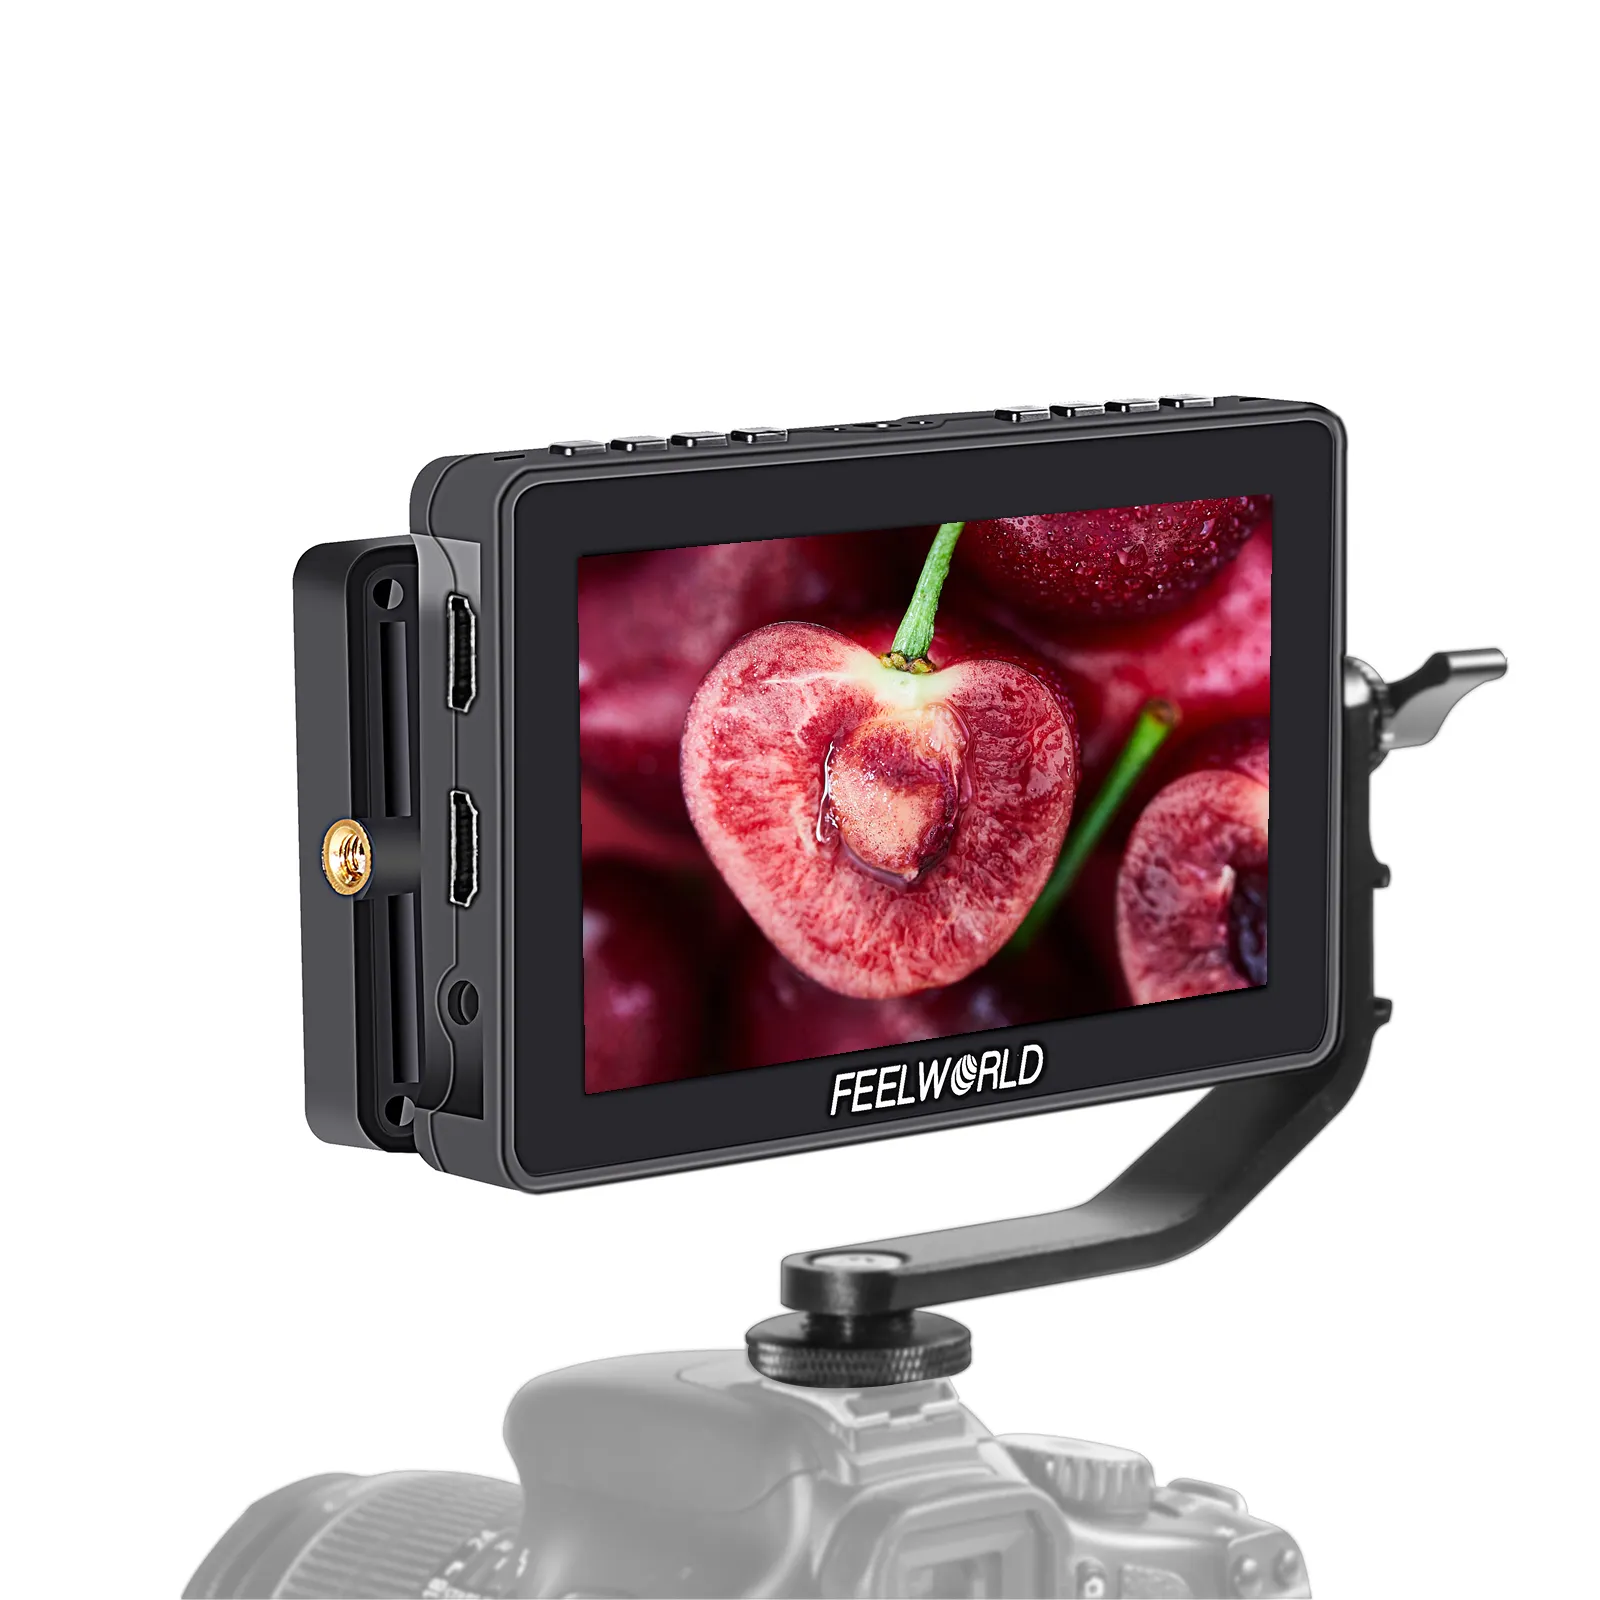 Popfeel WORLD — moniteur tactile F5 PRO 5.5 pouces FHD HDM, appareil photo avec lumière de remplissage, Kit d'installation et d'alimentation pour F970